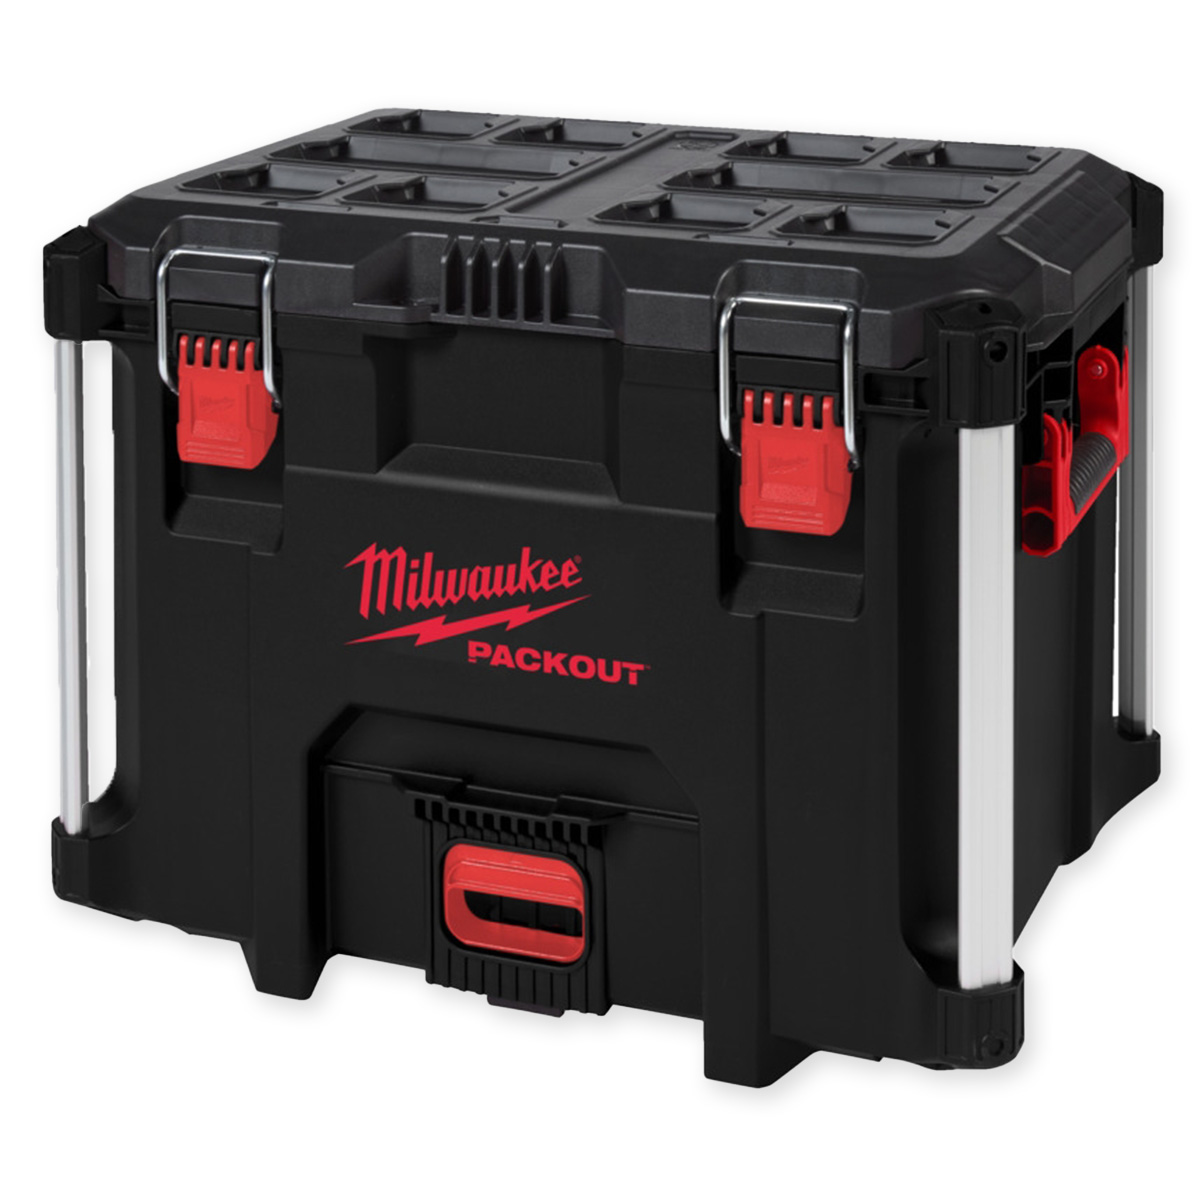 Milwaukee Packout Koffer XL